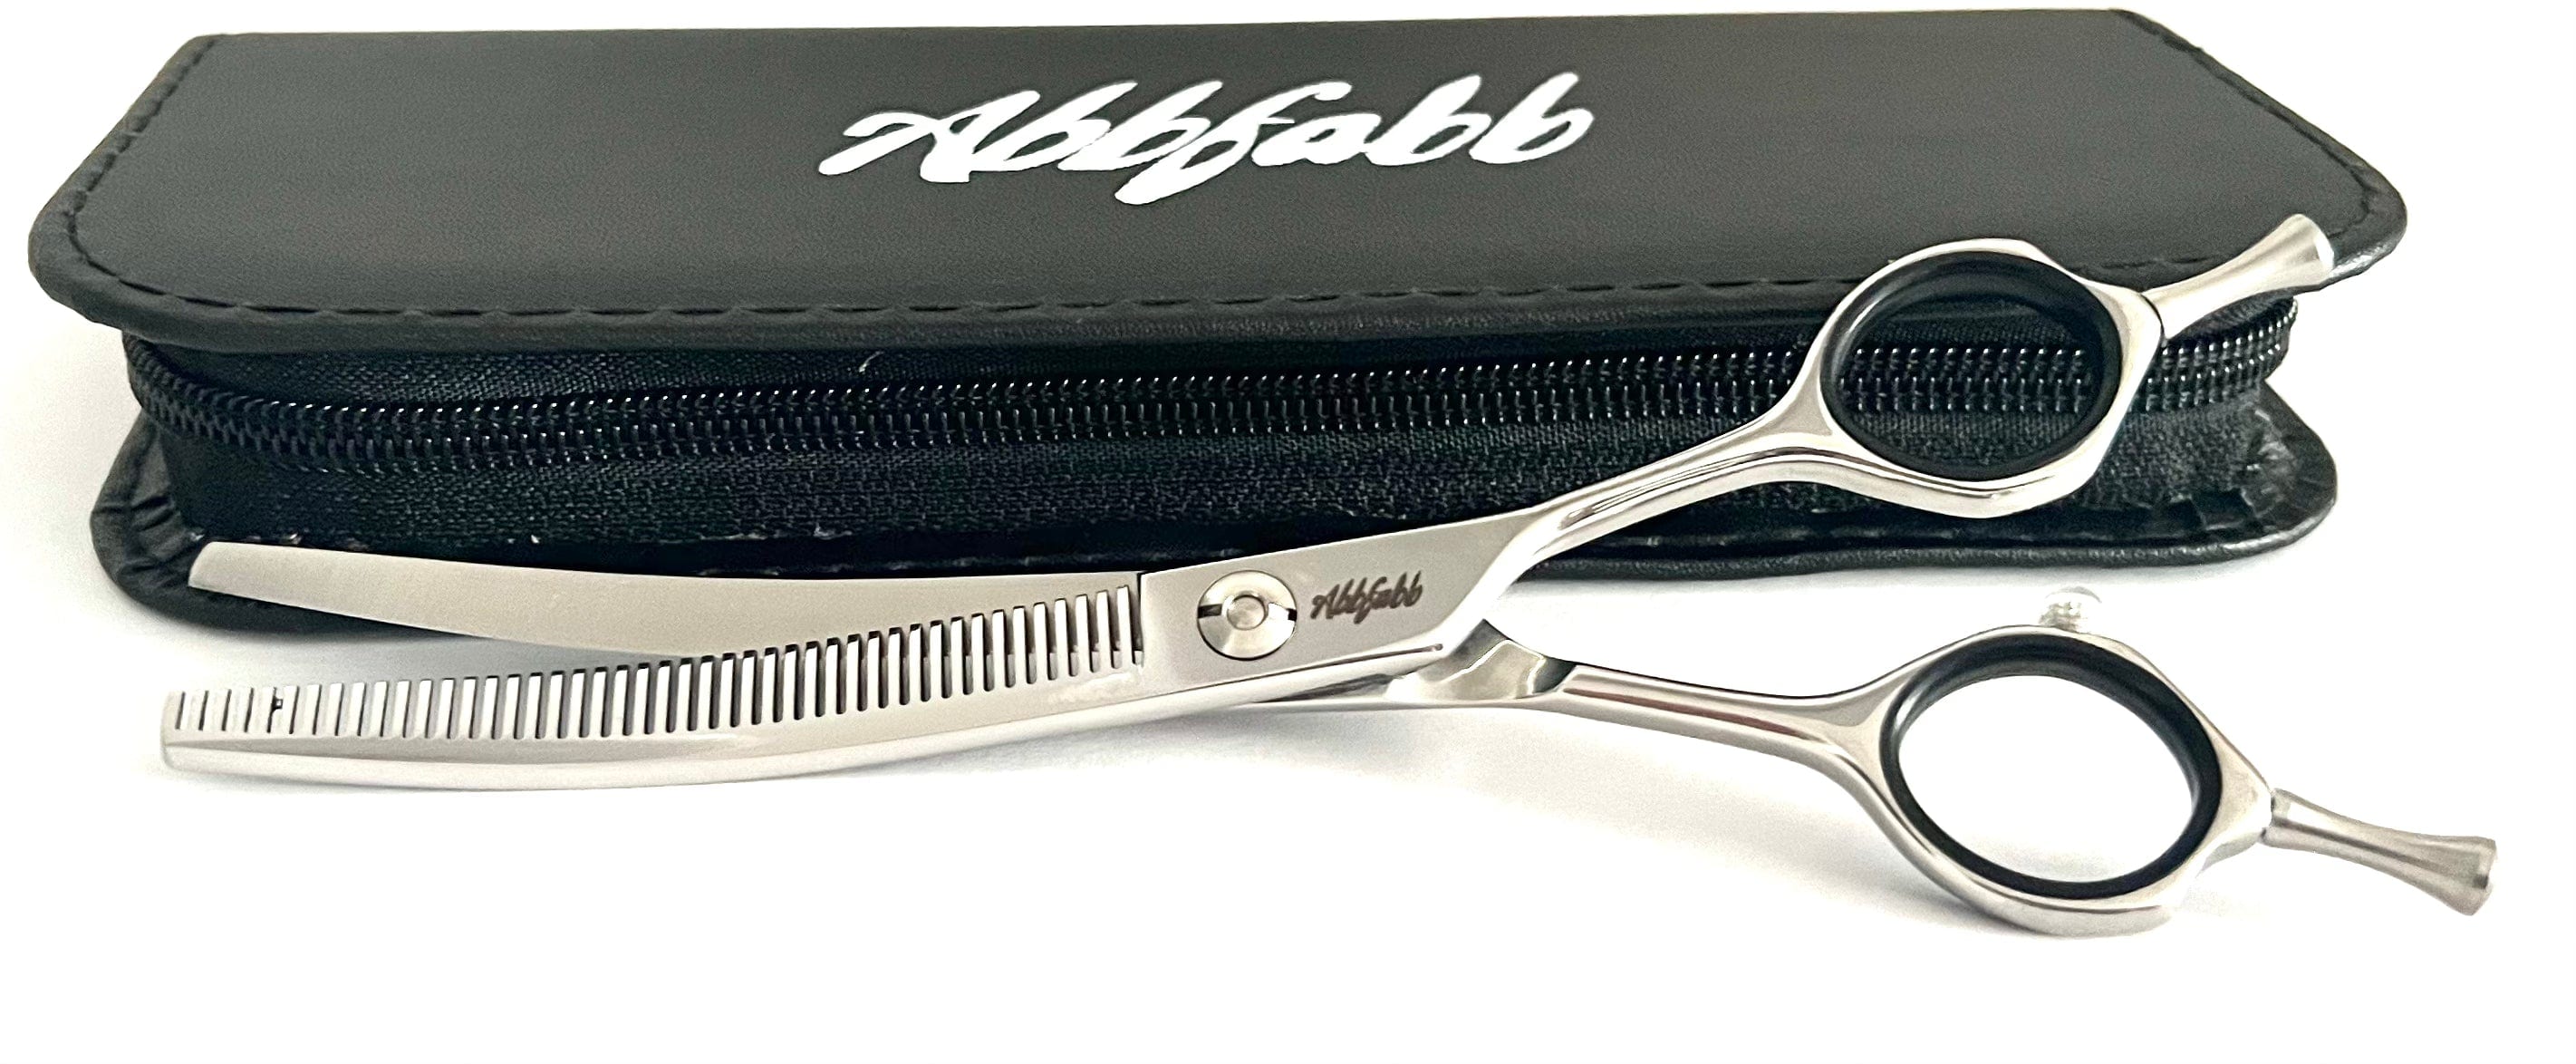 Abbfabb Grooming Scissors 6.5" 45 Teeth Reversible Curved Blending Dog Grooming Scissor with micro serrated teeth